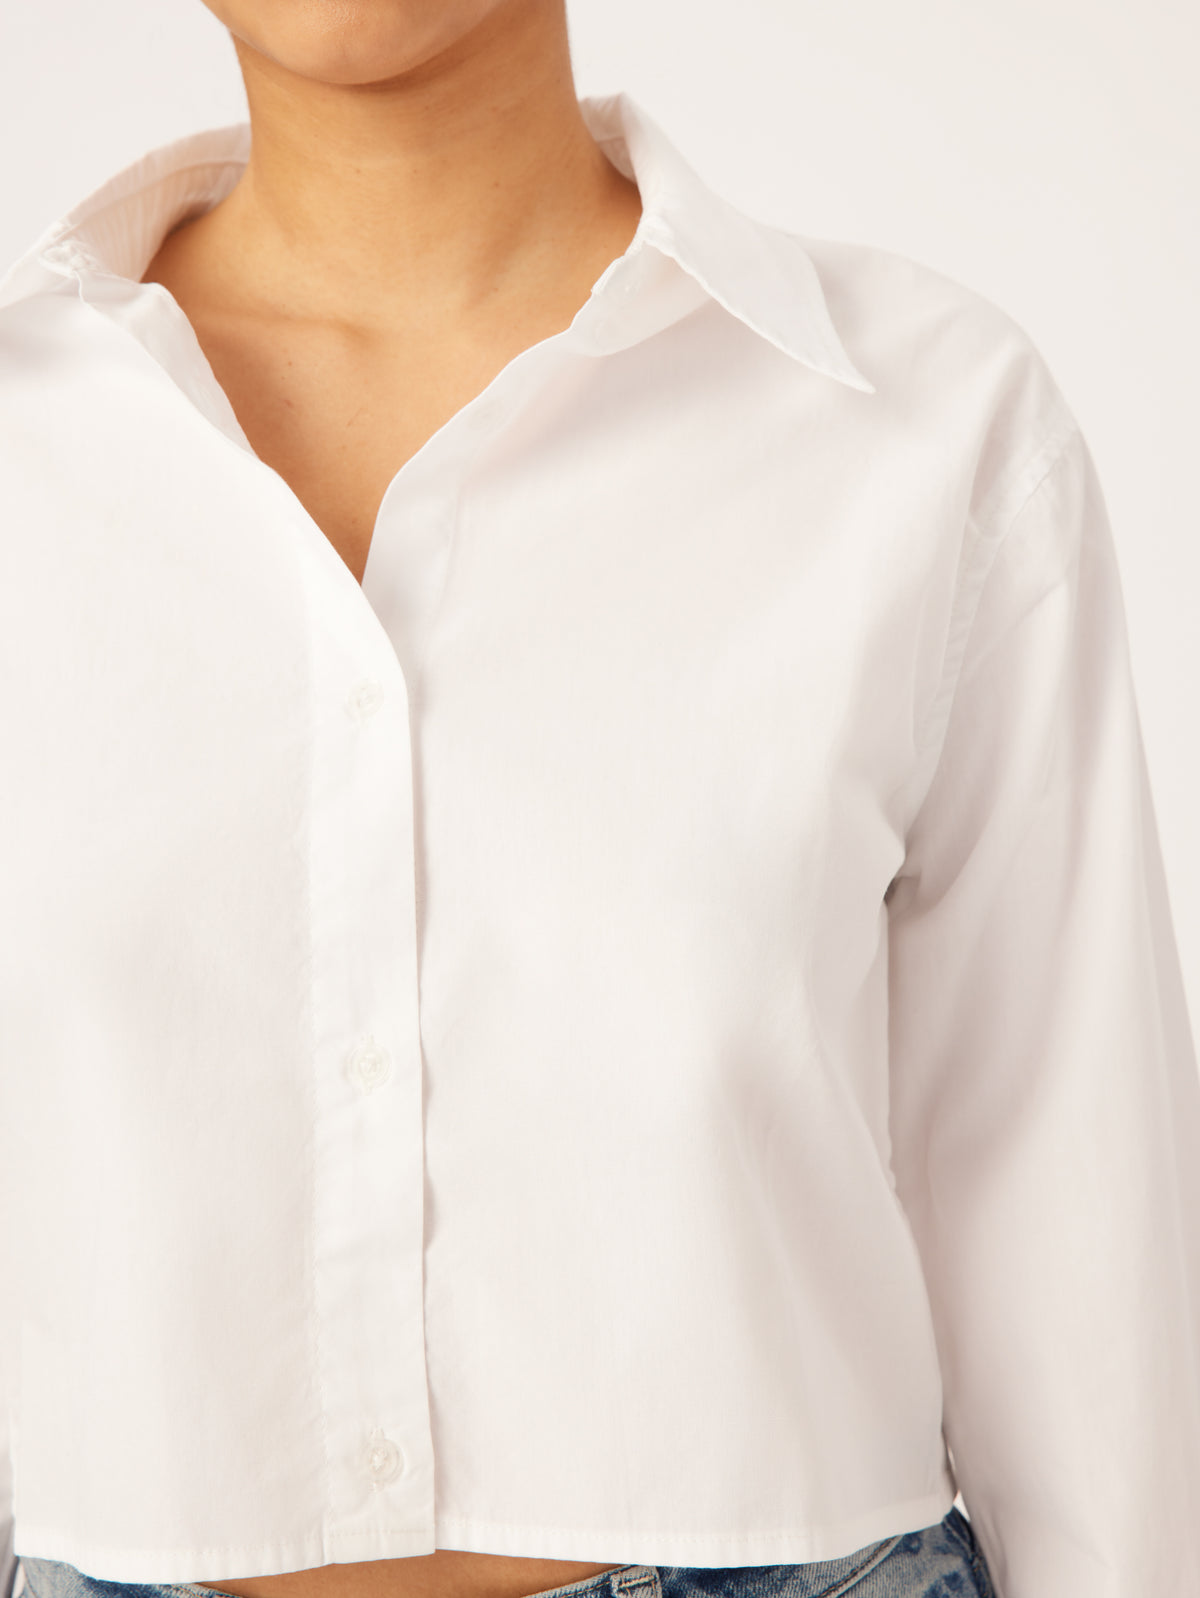 Lisette Shirt Cropped | White Poplin